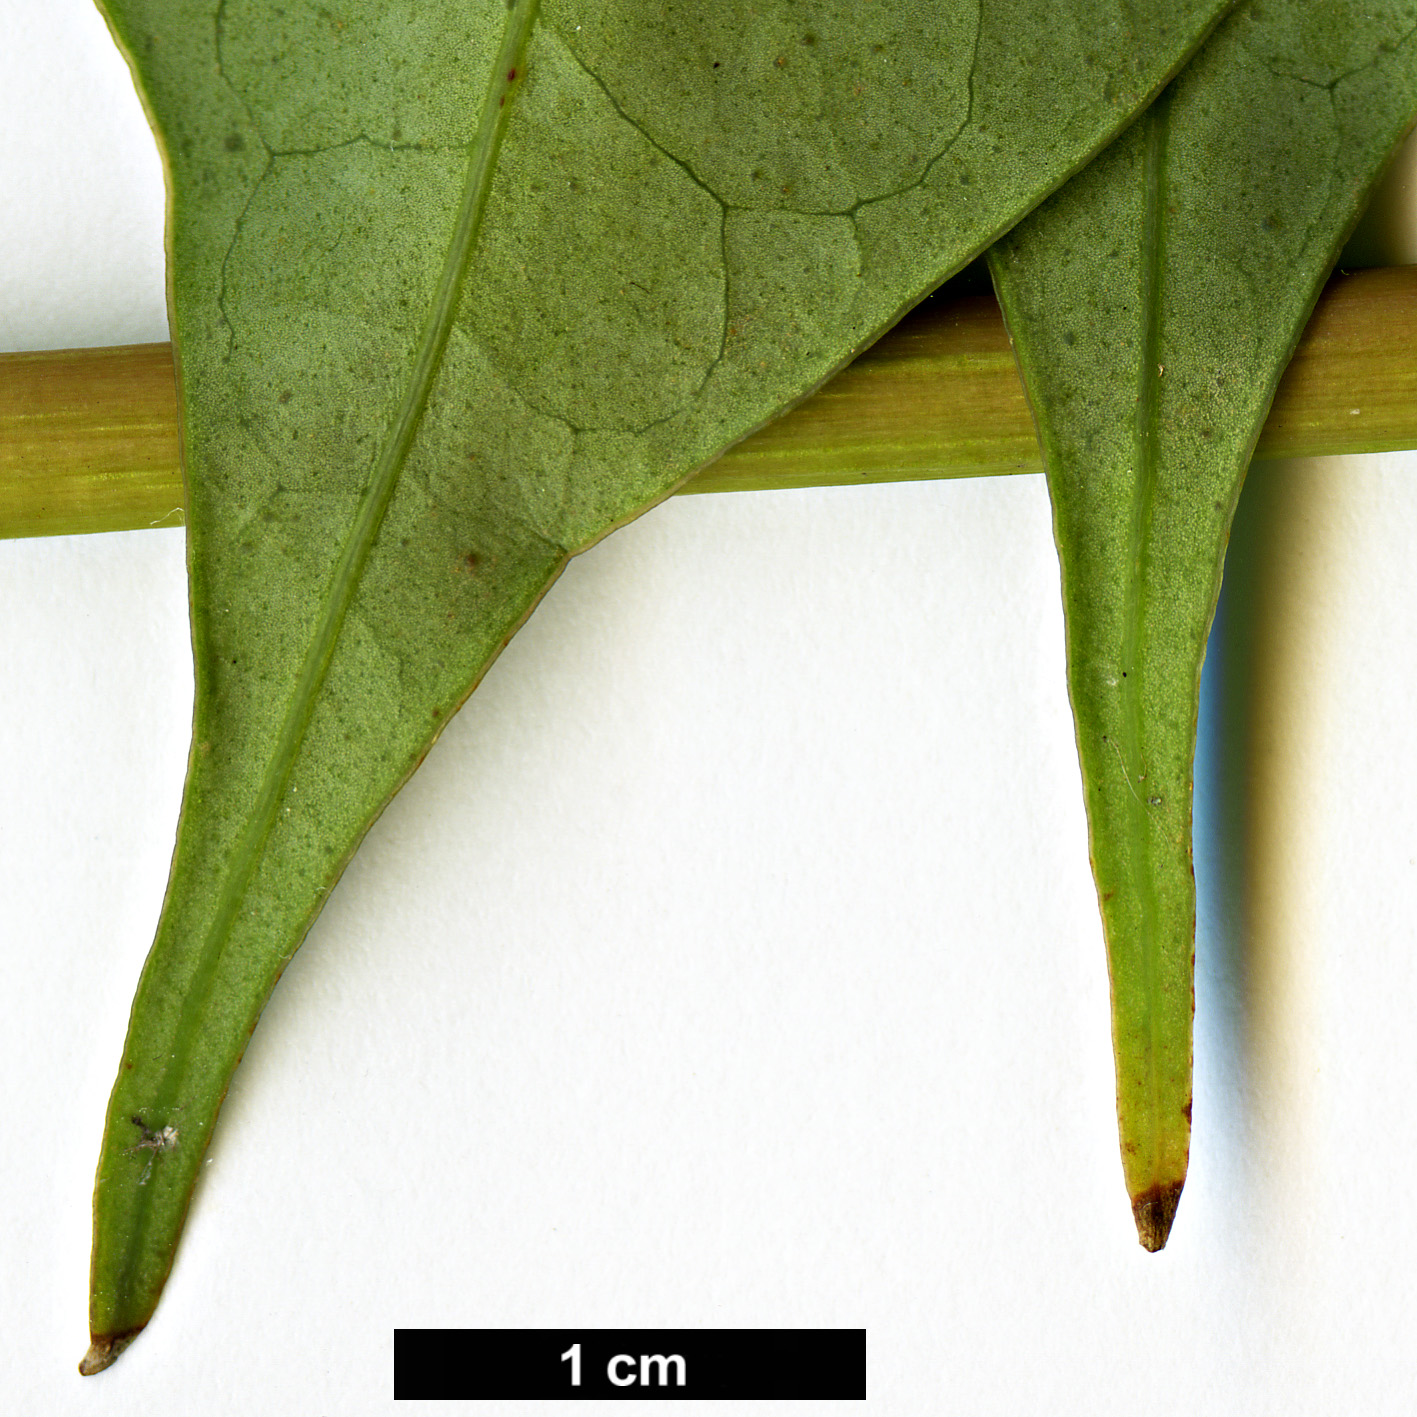 High resolution image: Family: Araliaceae - Genus: Schefflera - Taxon: shweliensis